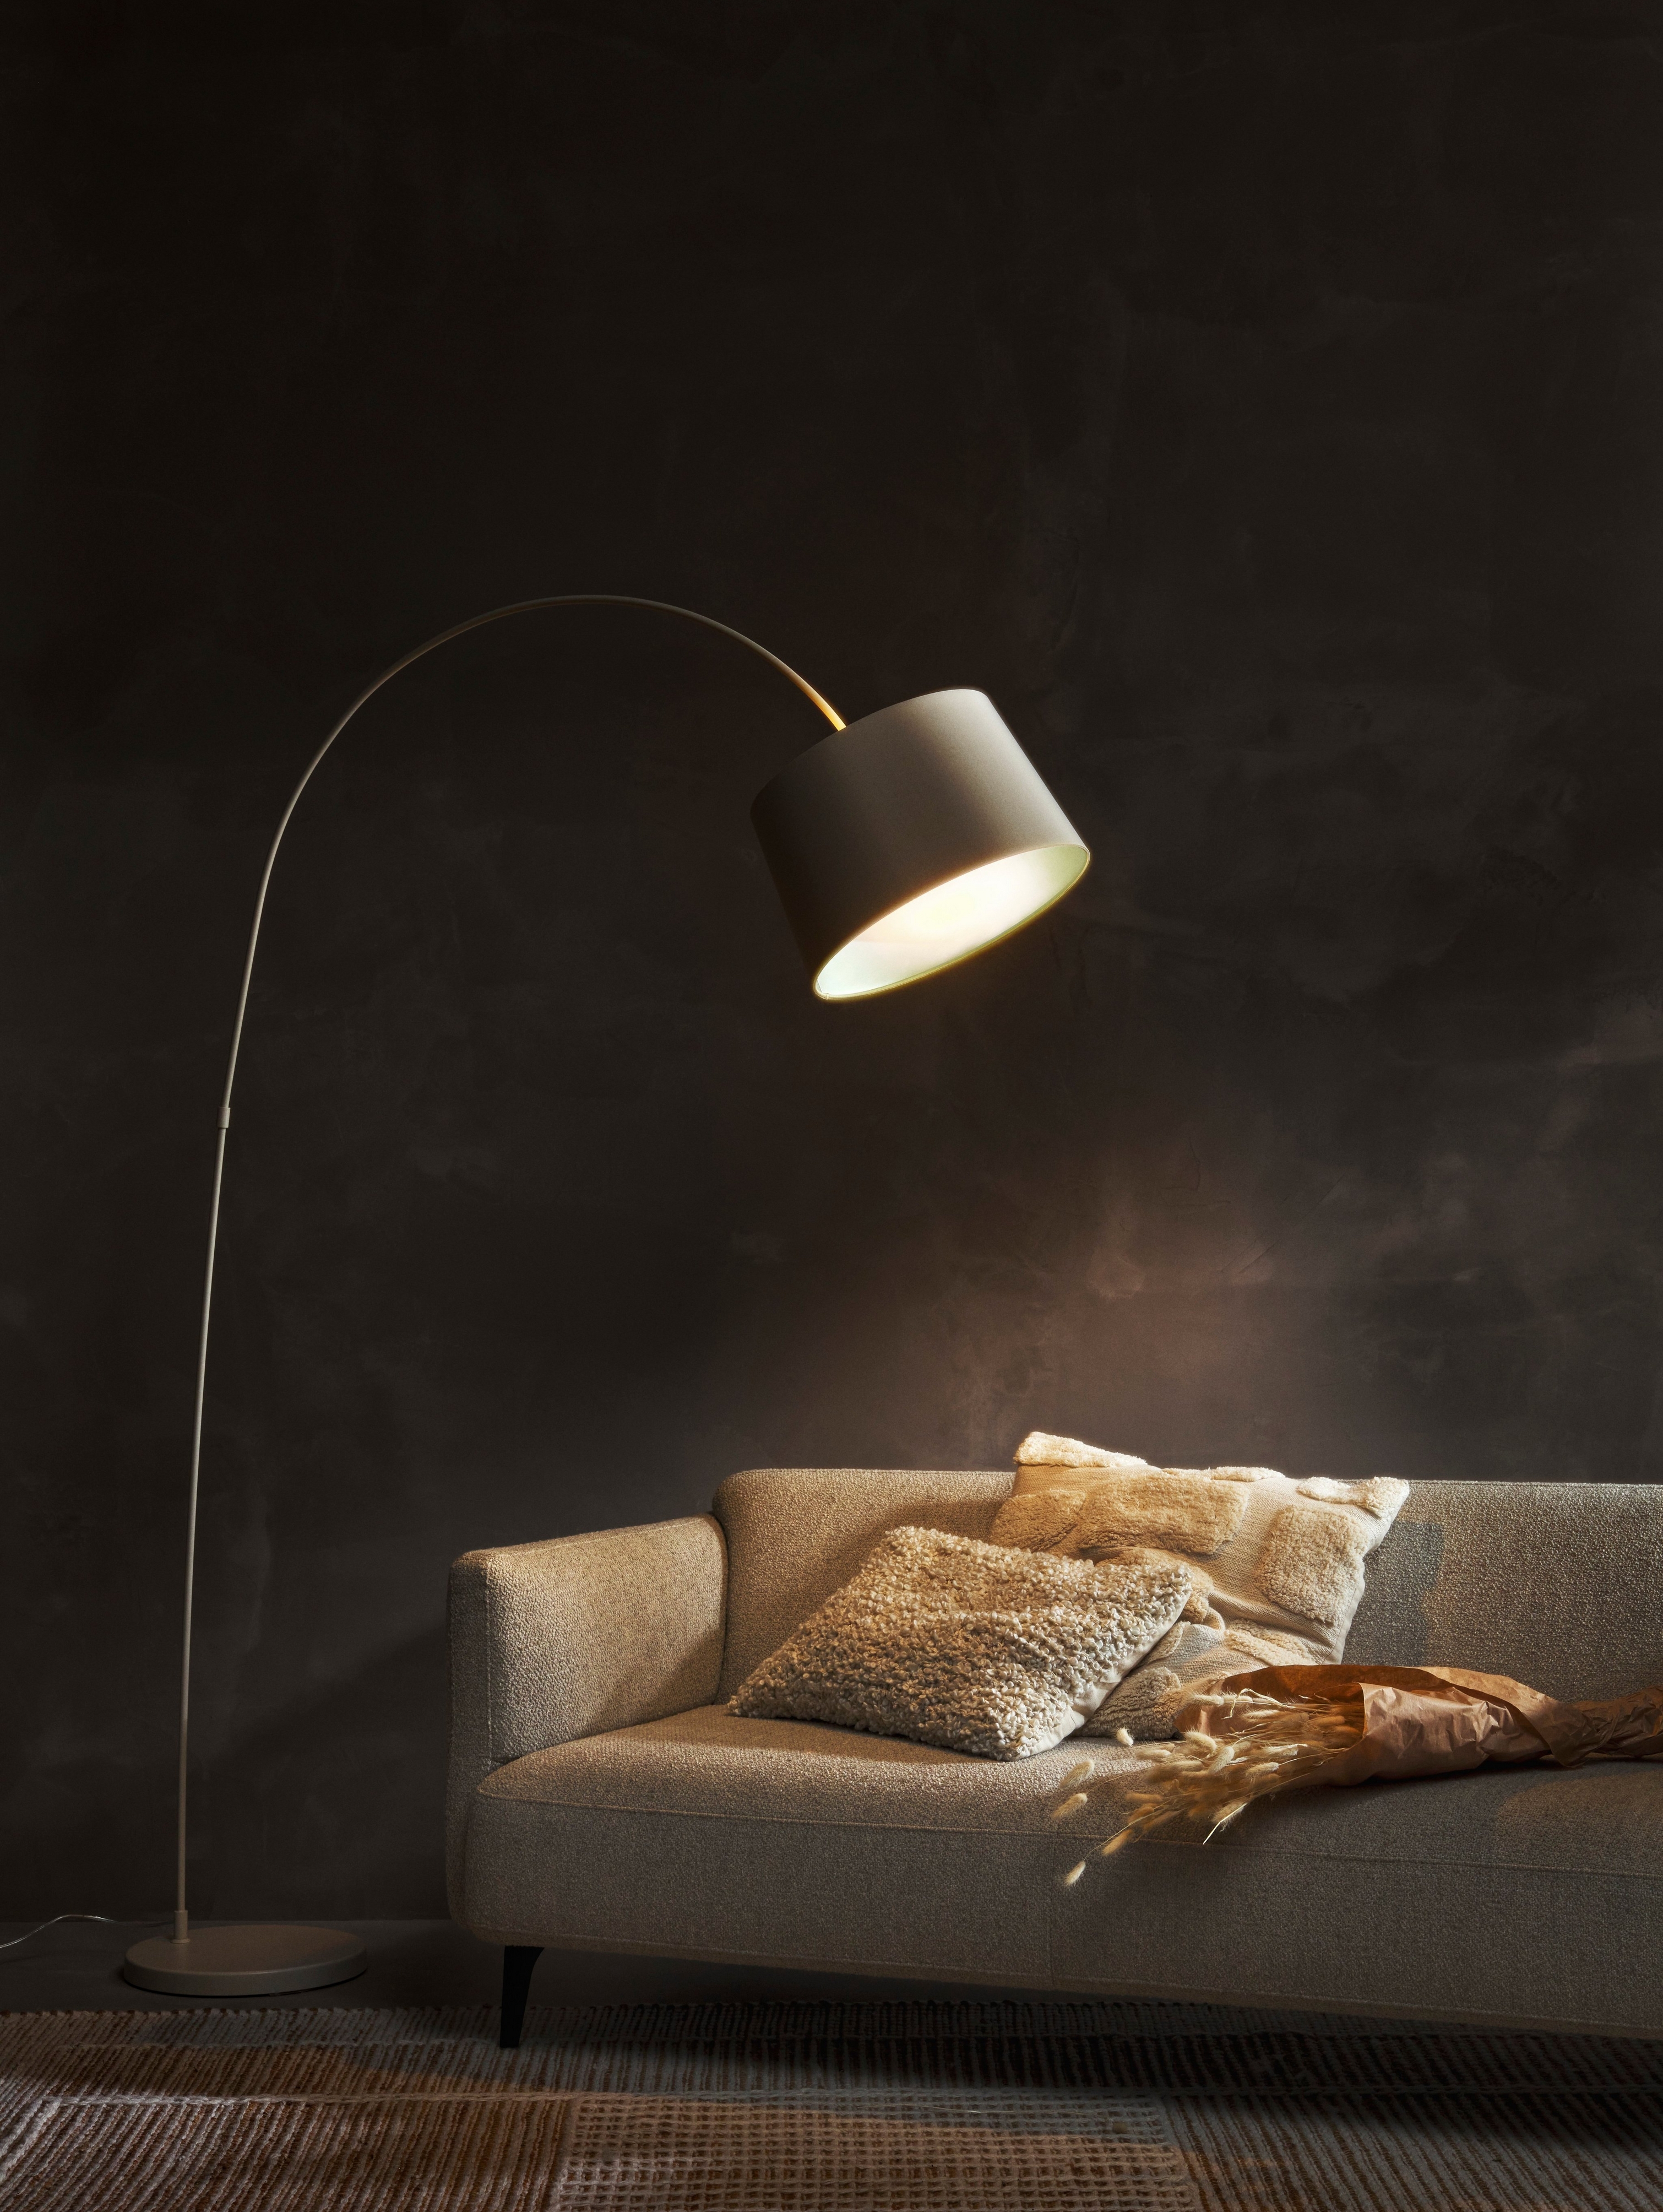 Напольная лампа Kuta, освещающая серый диван Modena с подушками на фоне темной стены.